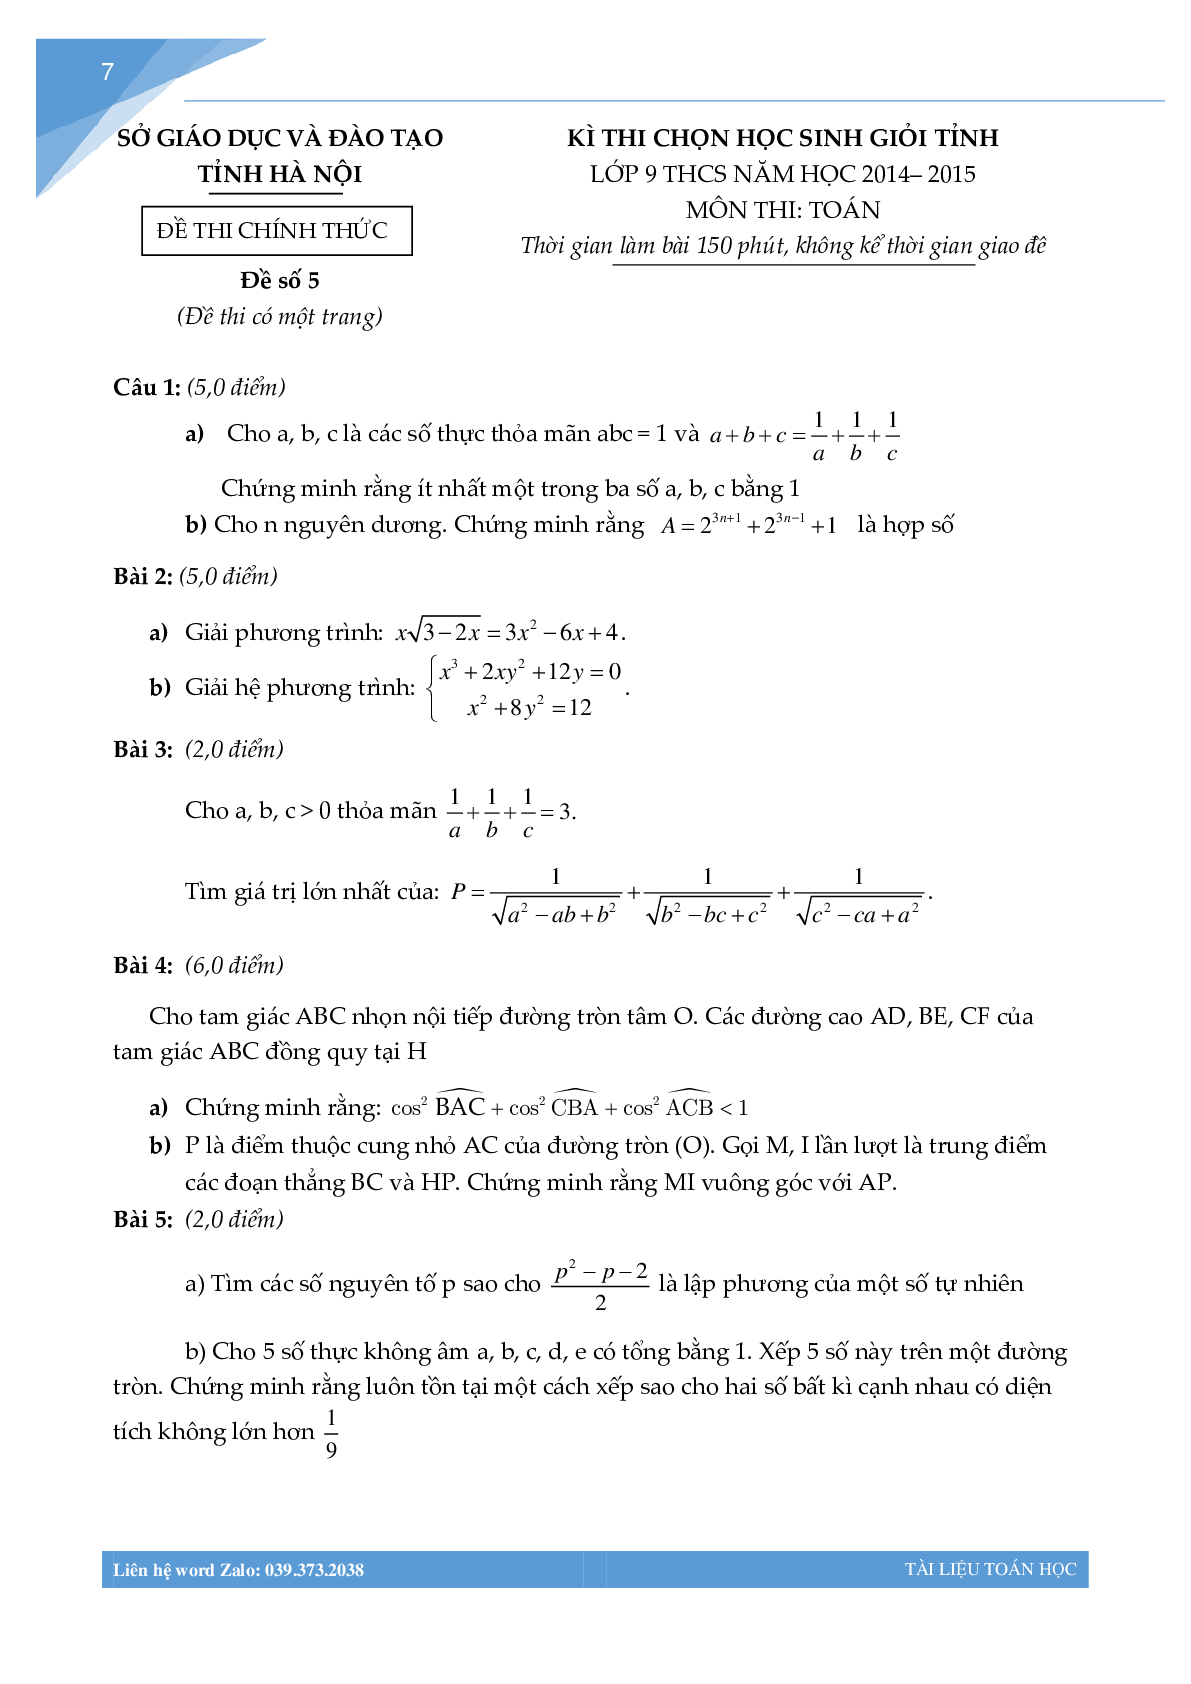 Tuyển tập đề thi học sinh giỏi toán lớp 9 thành phố Hà Nội (trang 6)